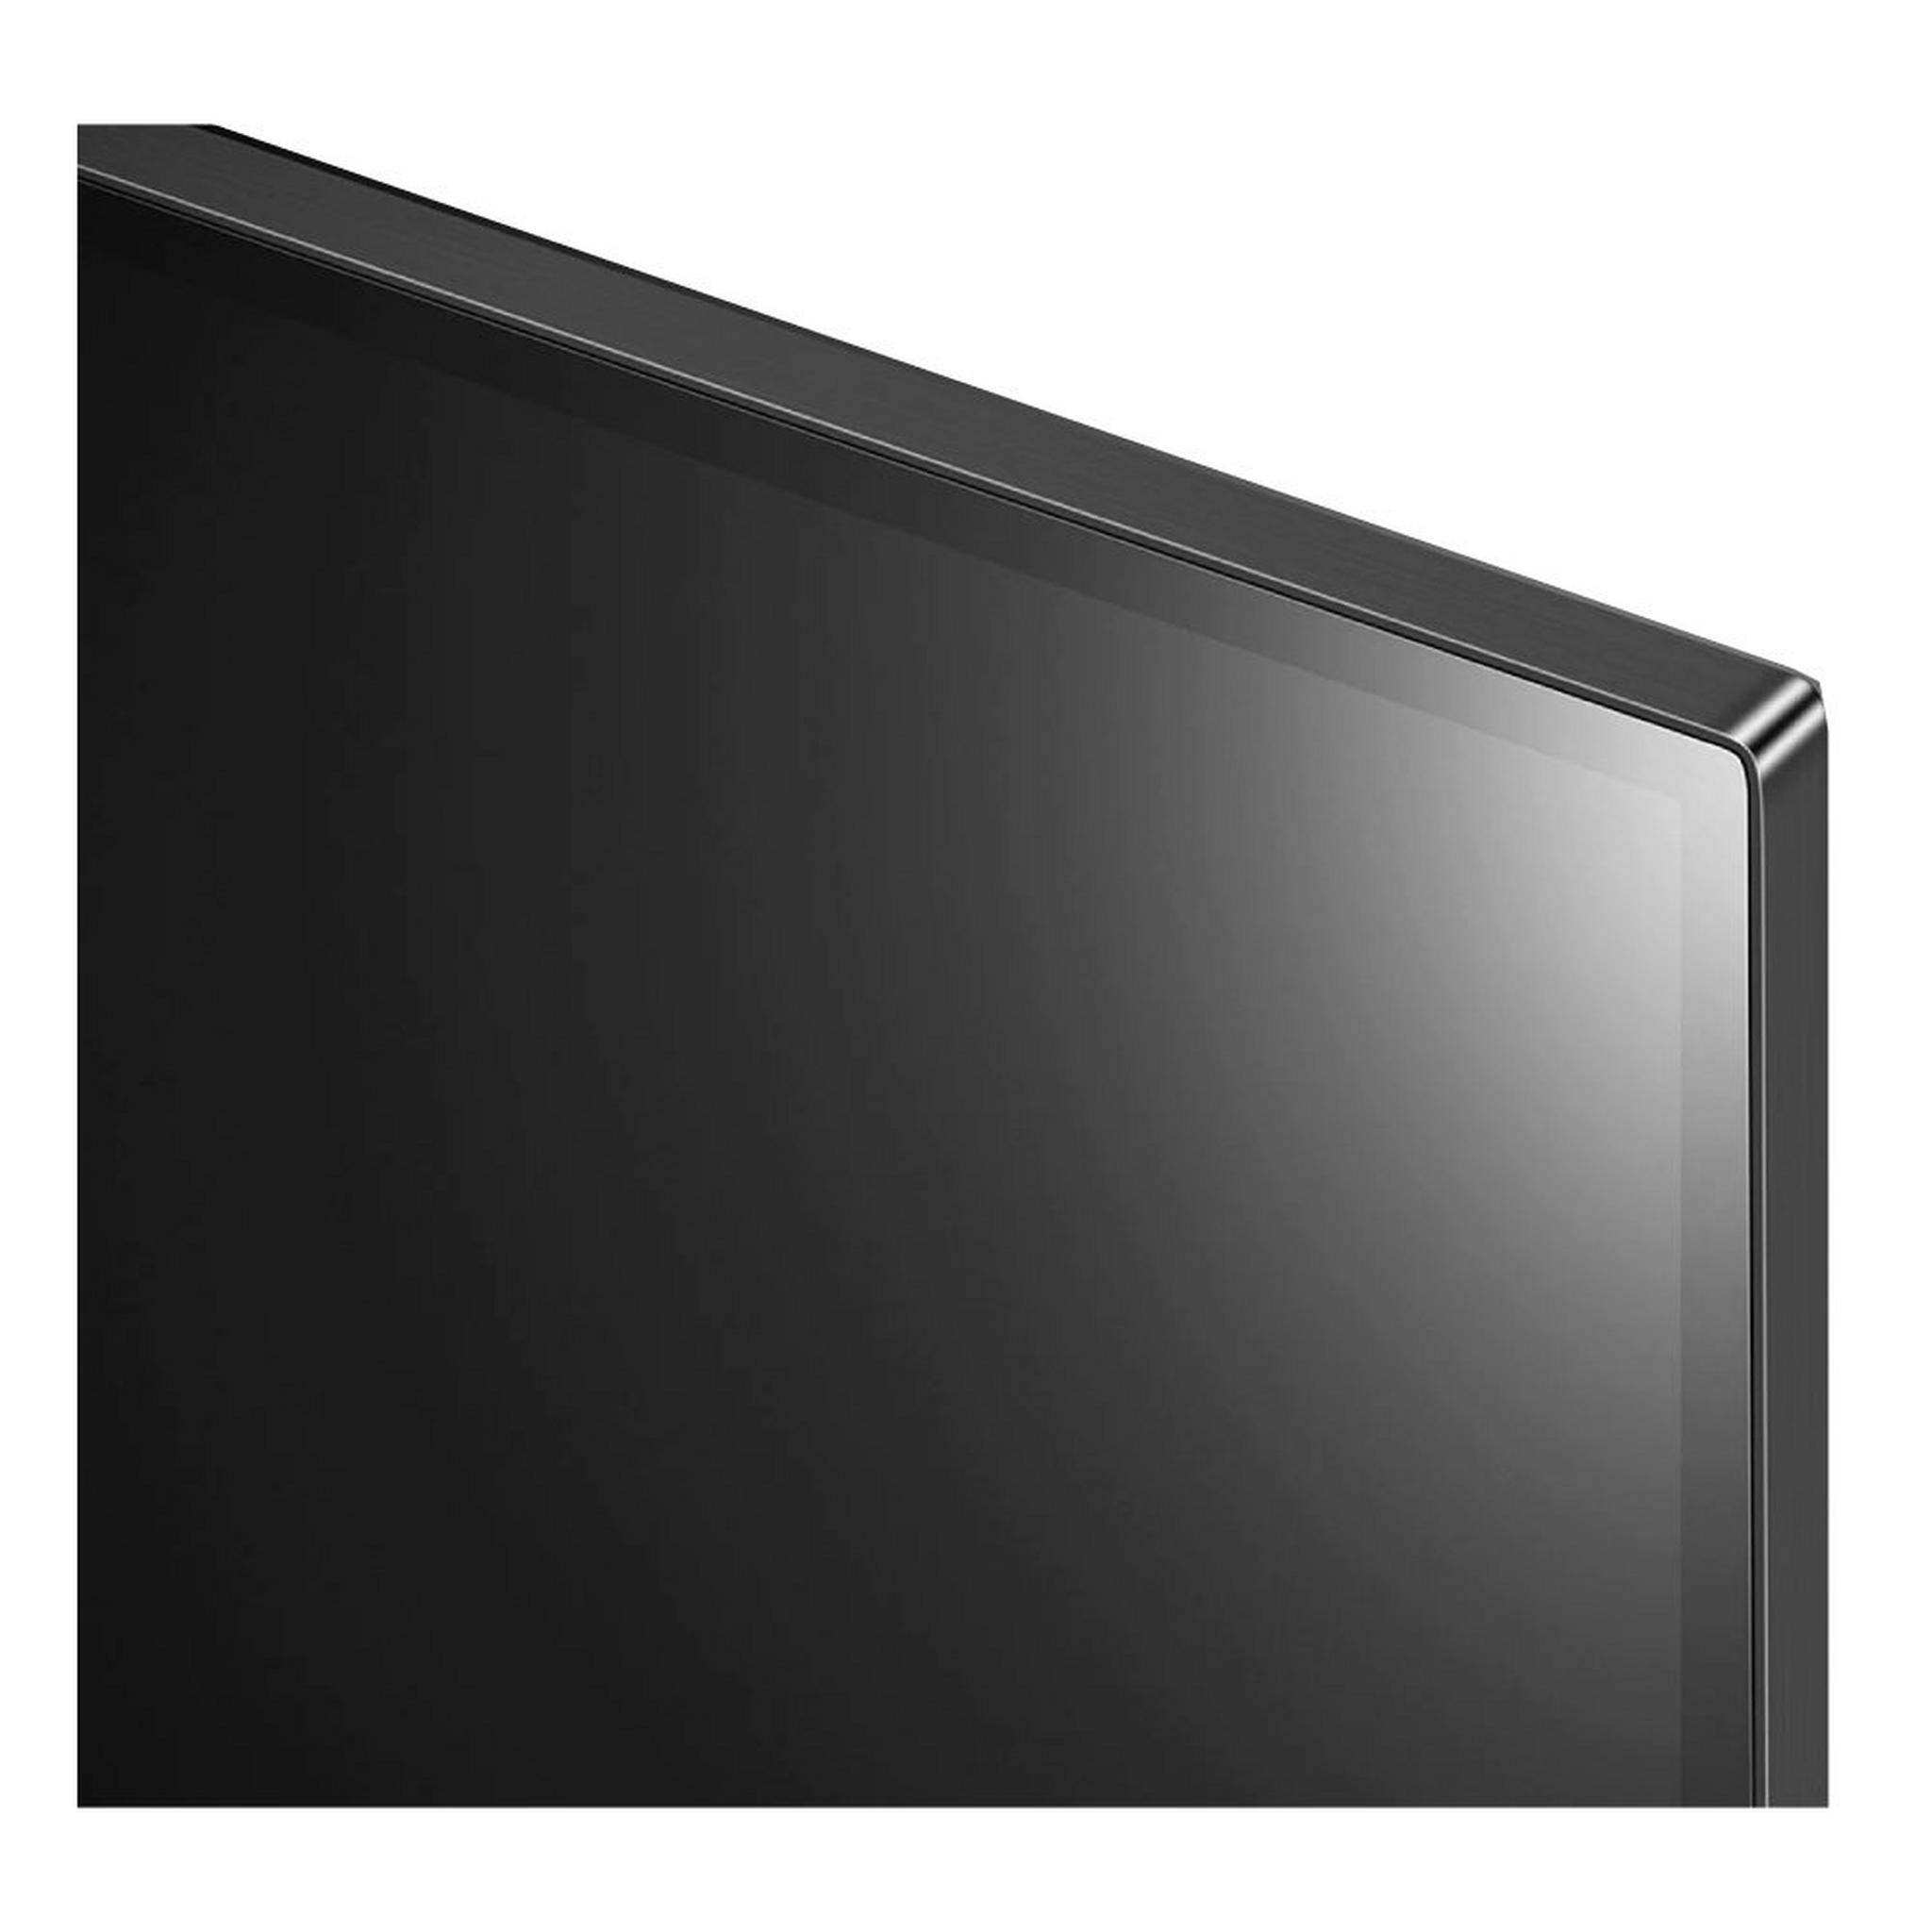 تلفزيون LG Evo C2 الذكي OLED 4K HDR 48 بوصة (OLED48C2)